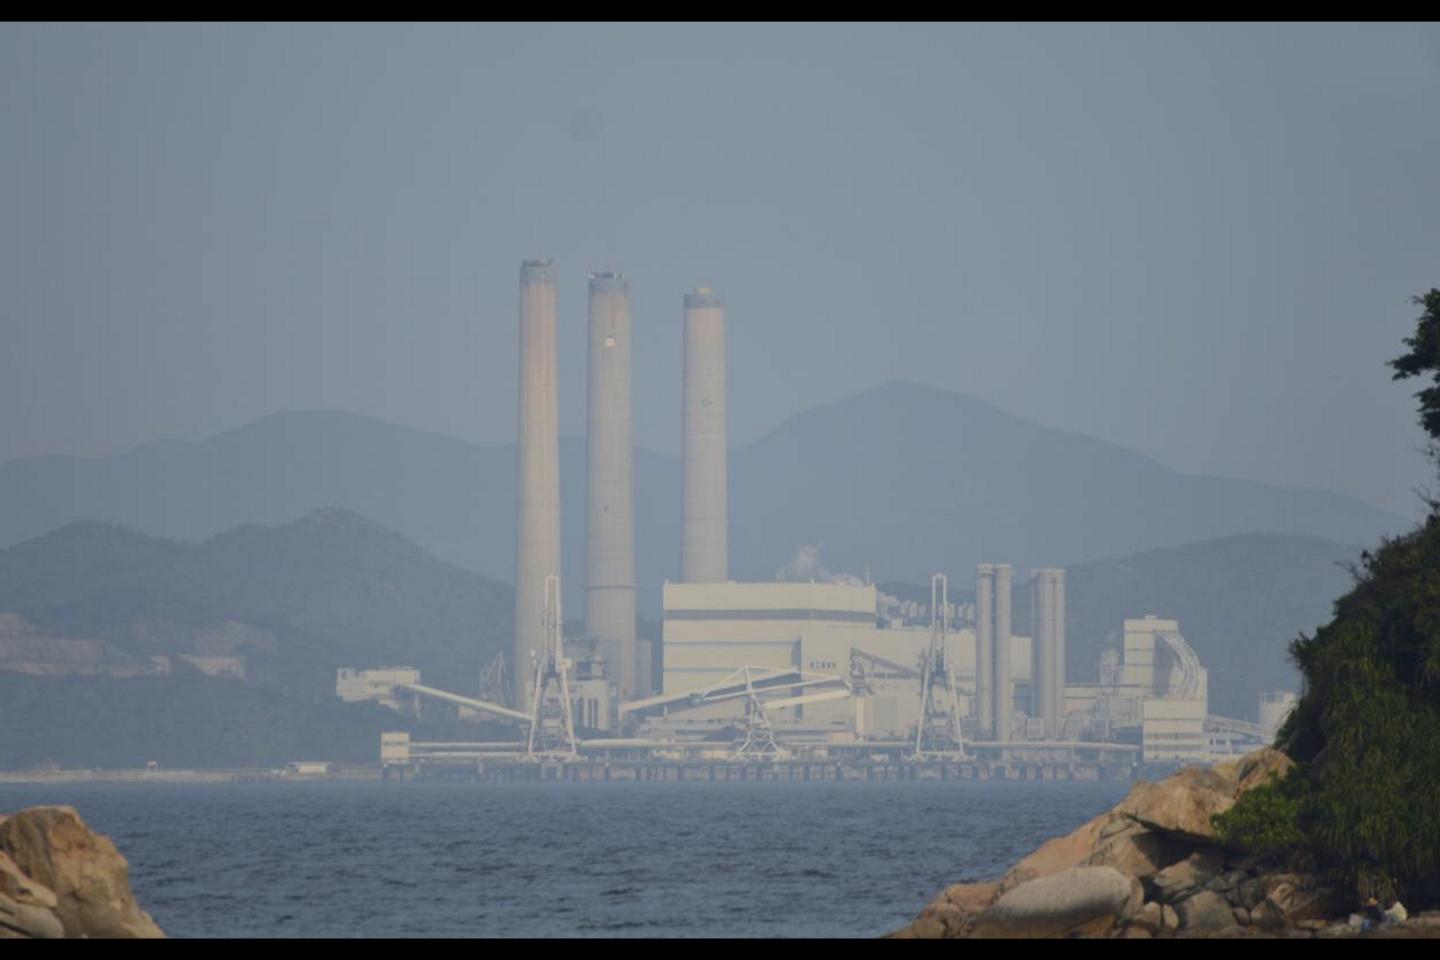 Завод в Китае окутан дымкой загрязненного воздуха. Всемирная организация здравоохранения предупреждает о таком загрязнении, изменение климата вызывают большей частью ископаемые виды топлива, это «чрезвычайная ситуация в области общественного здравоохранения». Фото: Leung Ka Wa